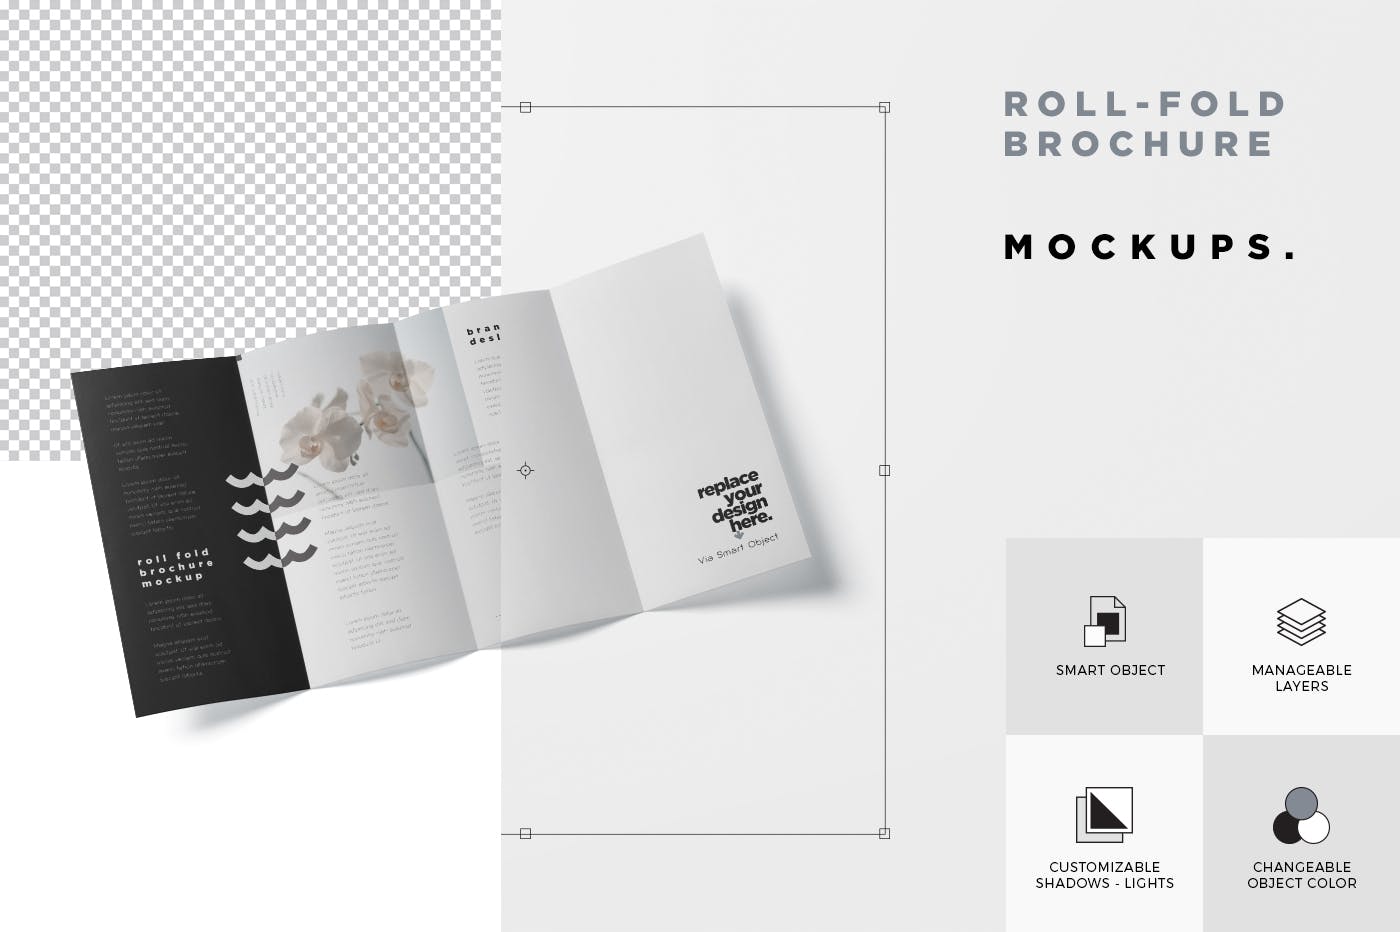 折叠设计风格企业传单/宣传册设计样机普贤居精选 Roll-Fold Brochure Mockup – DL DIN Lang Size插图(6)